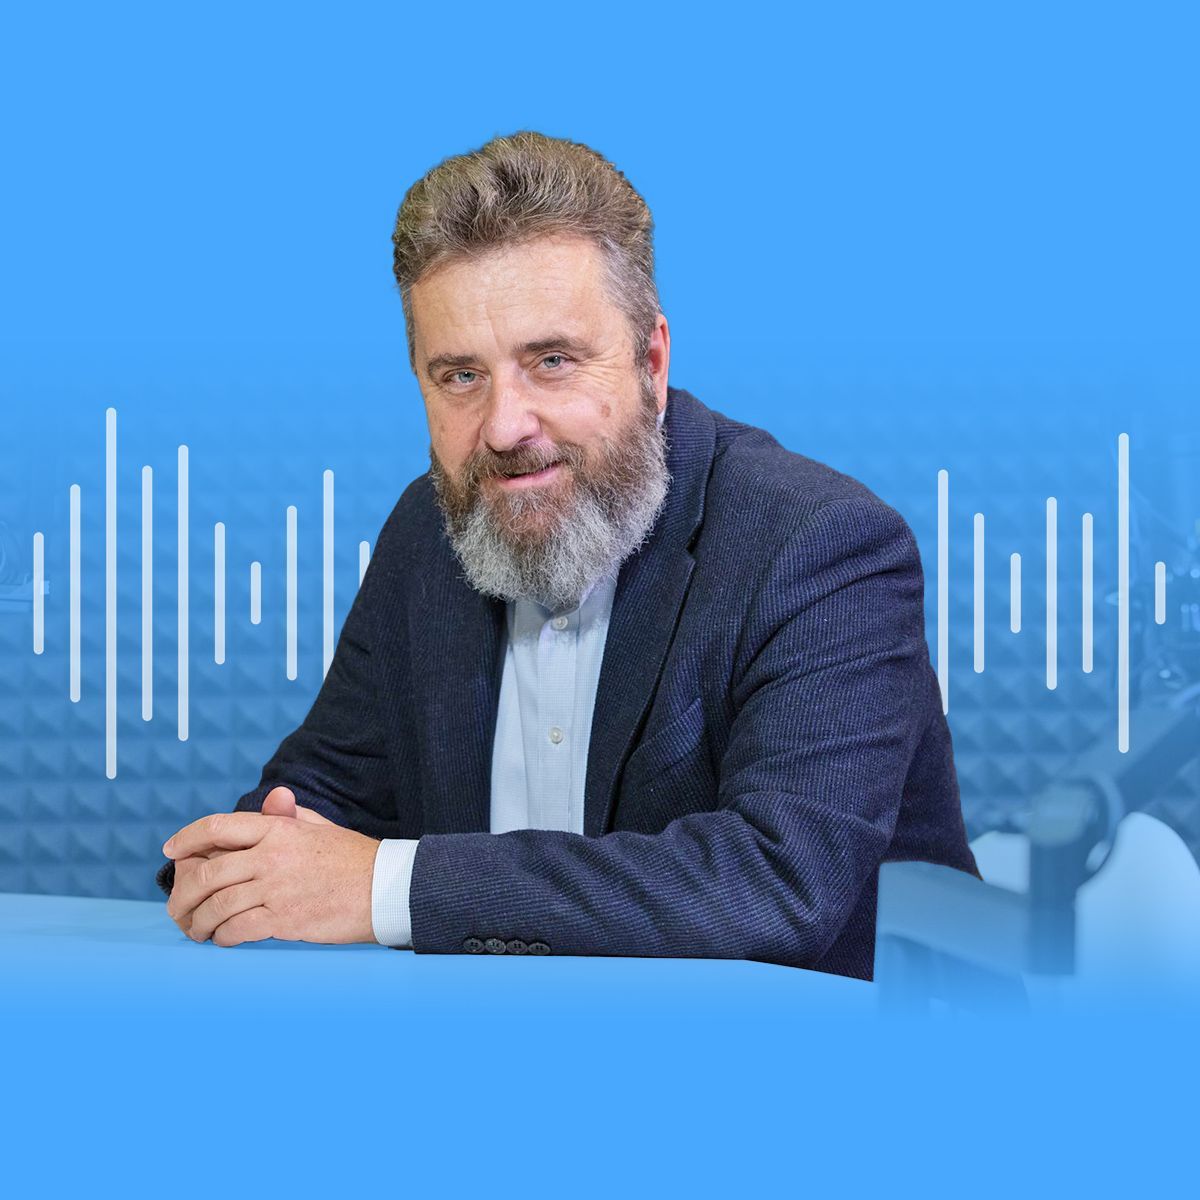 podcast - Ivo Jupa, ředitel Národního pedagogického institutu